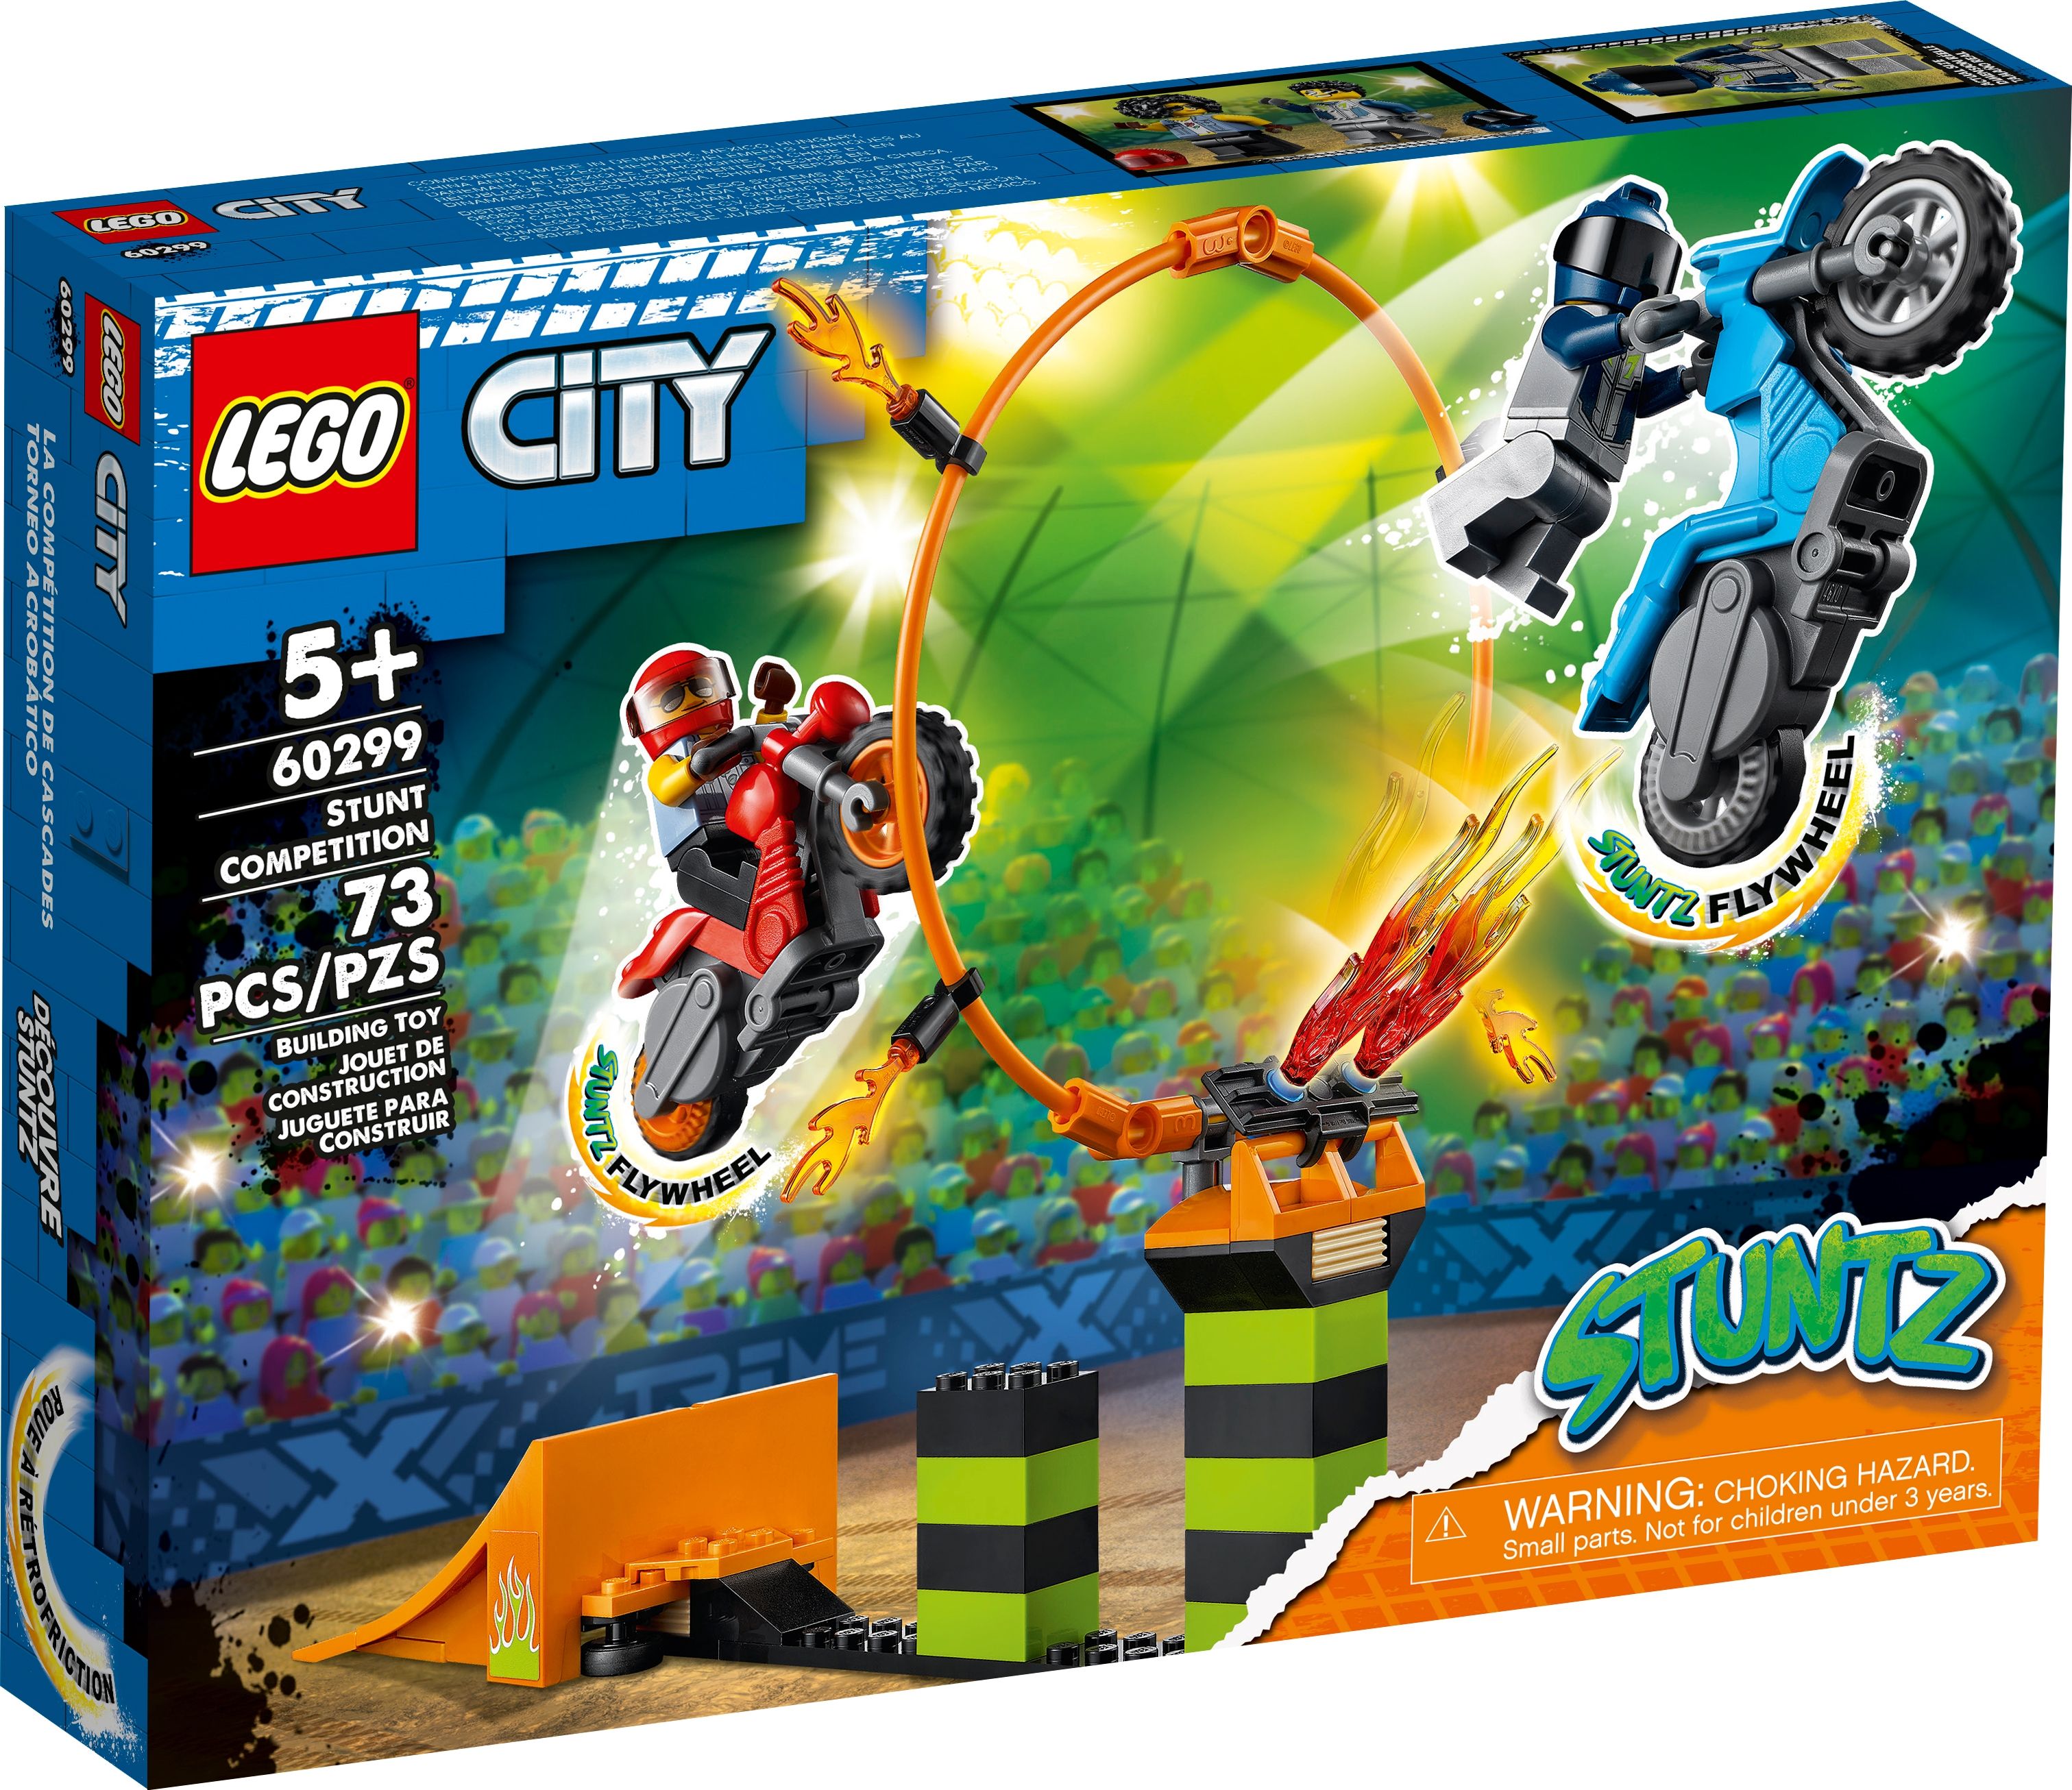 LEGO City 60299 Stunt-Wettbewerb LEGO_60299_alt1.jpg